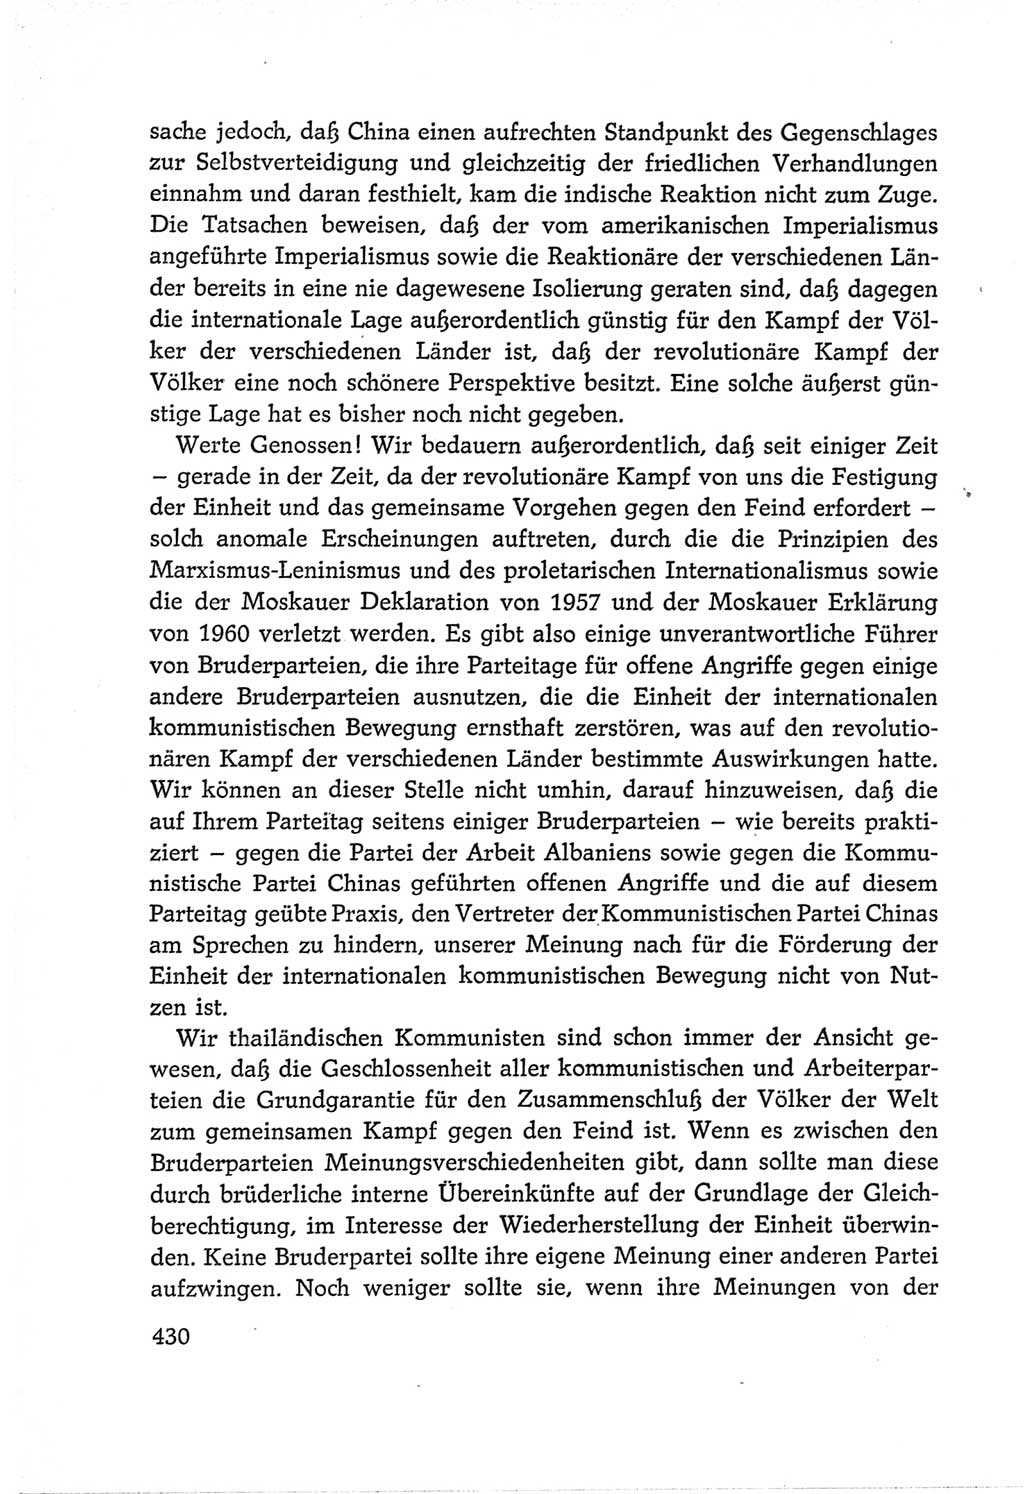 Protokoll der Verhandlungen des Ⅵ. Parteitages der Sozialistischen Einheitspartei Deutschlands (SED) [Deutsche Demokratische Republik (DDR)] 1963, Band Ⅱ, Seite 430 (Prot. Verh. Ⅵ. PT SED DDR 1963, Bd. Ⅱ, S. 430)